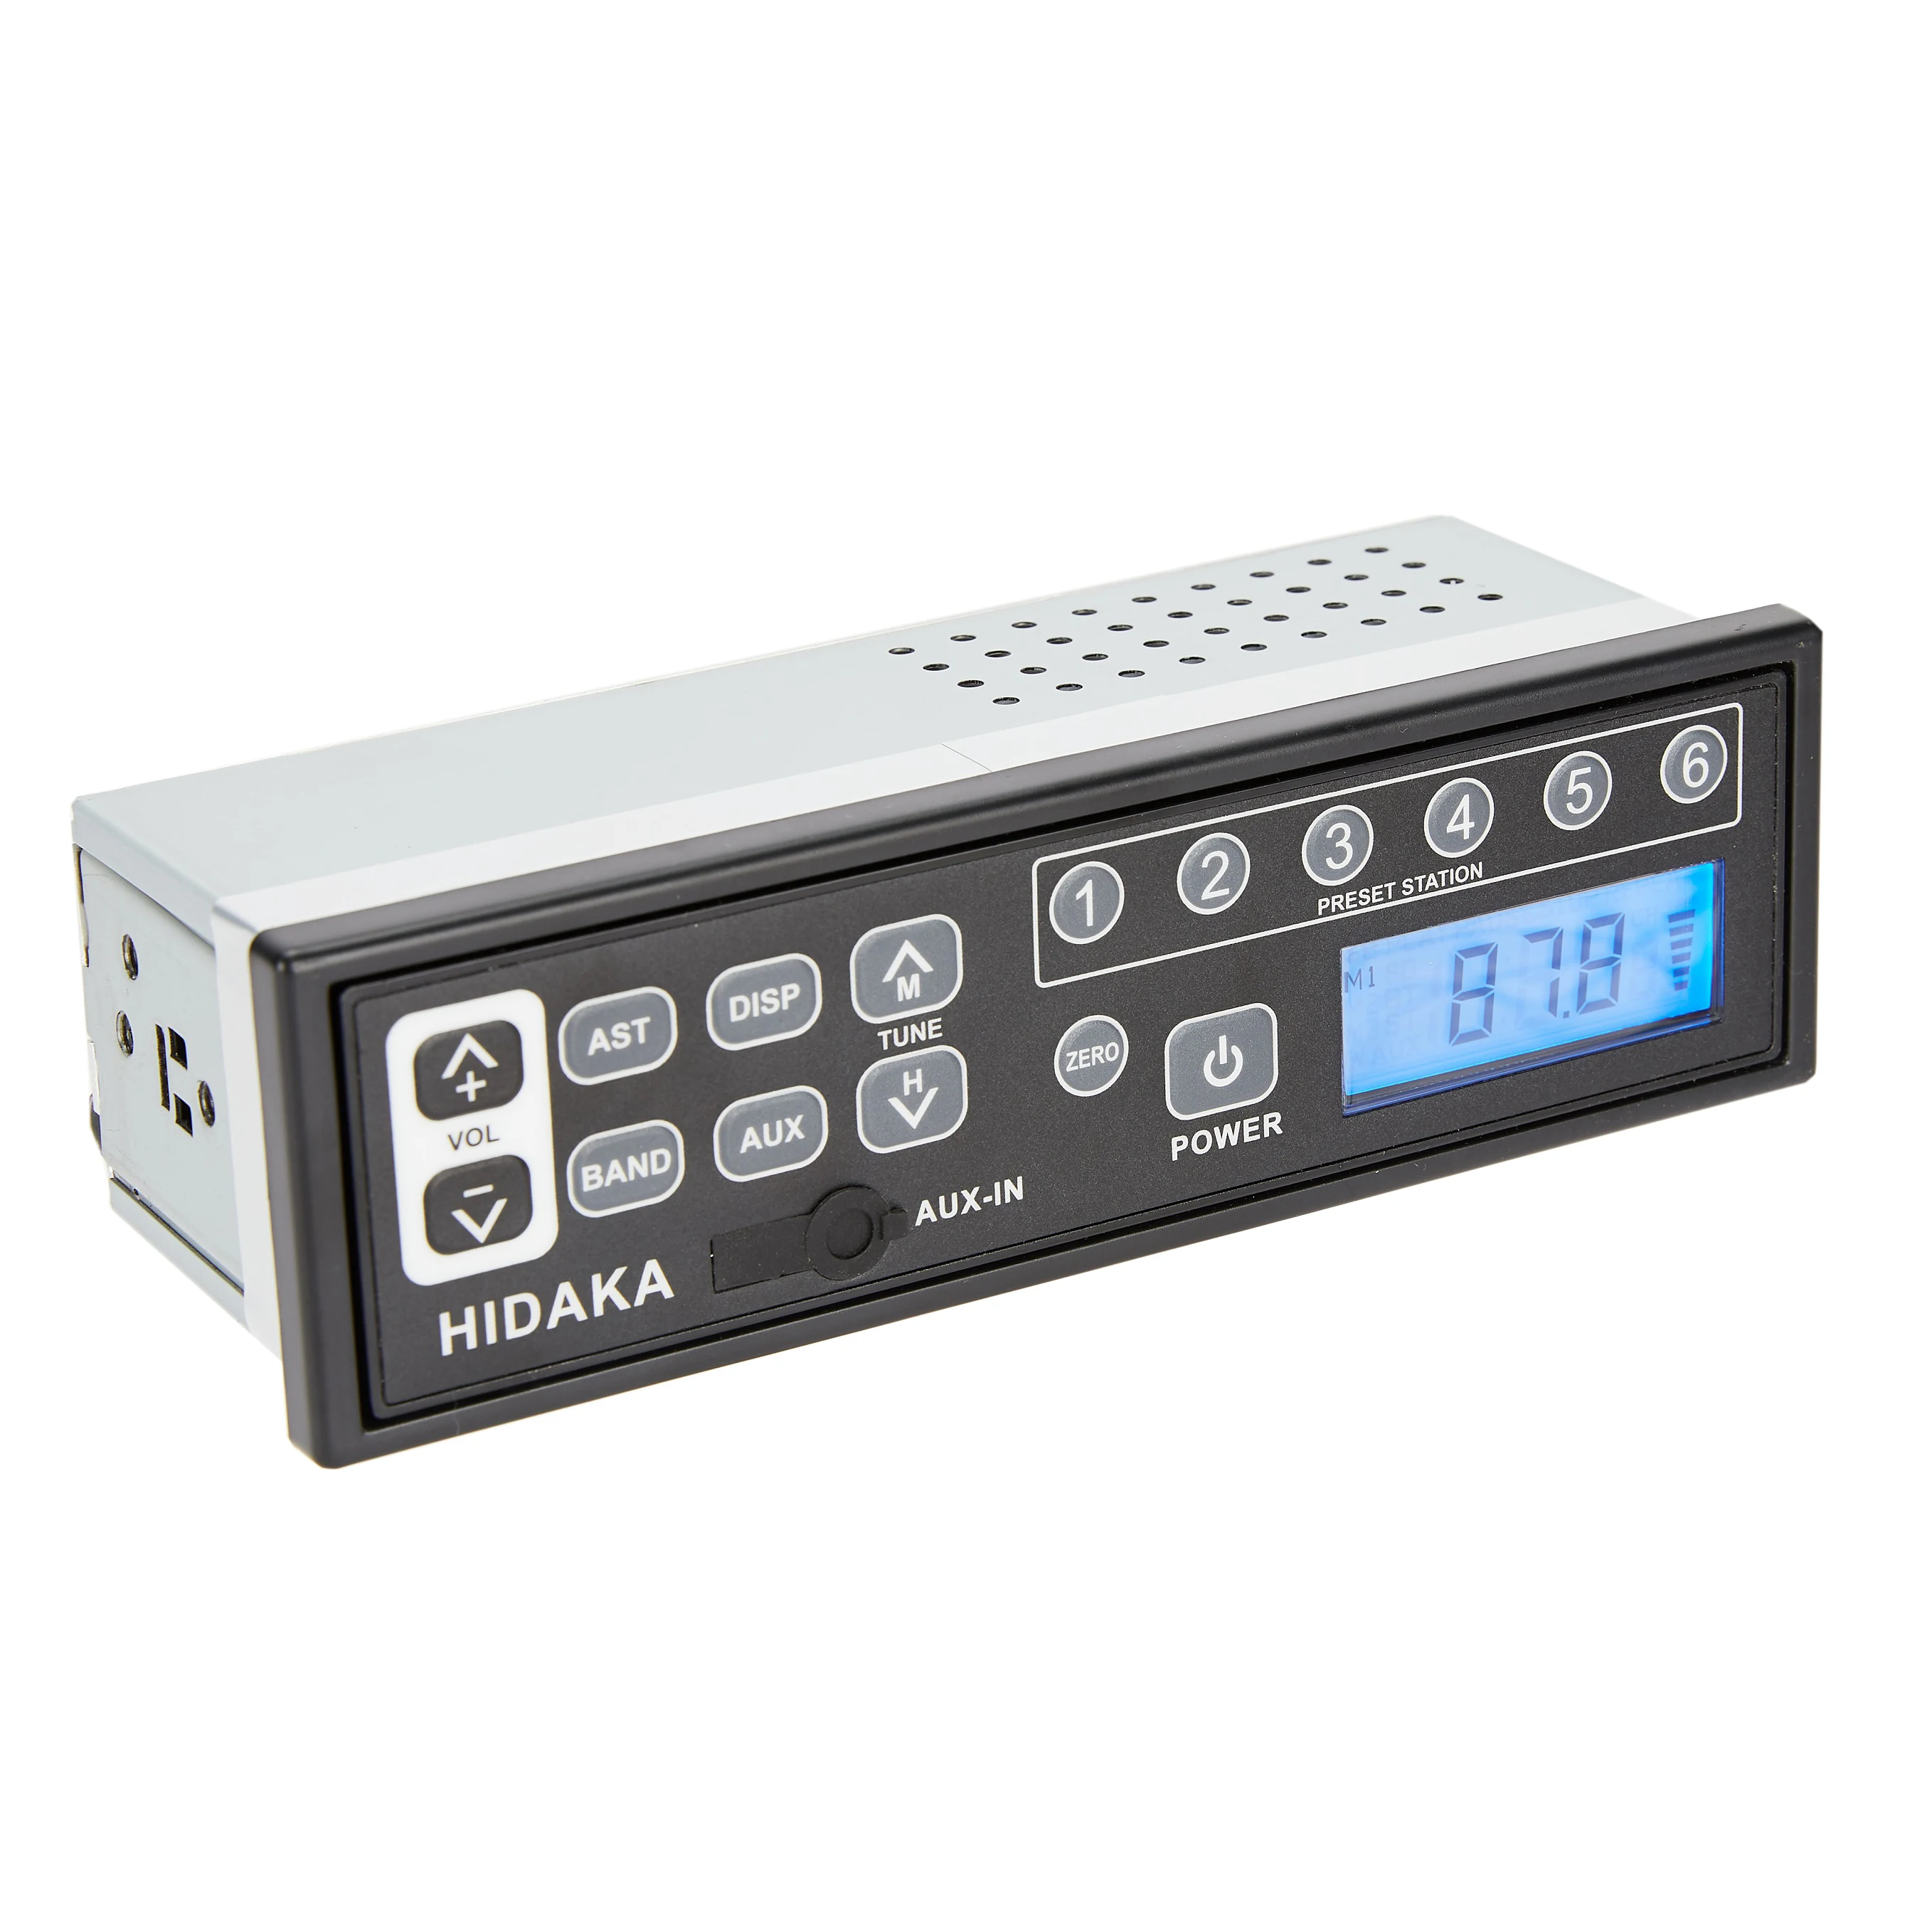 HIDAKA Japan Fabrik BAGGER AUTO Radio 12V/24V 1Din mit Echtzeit Uhr AUX-IN LCD HI-M99 für komastu Kobelco Sumitomo